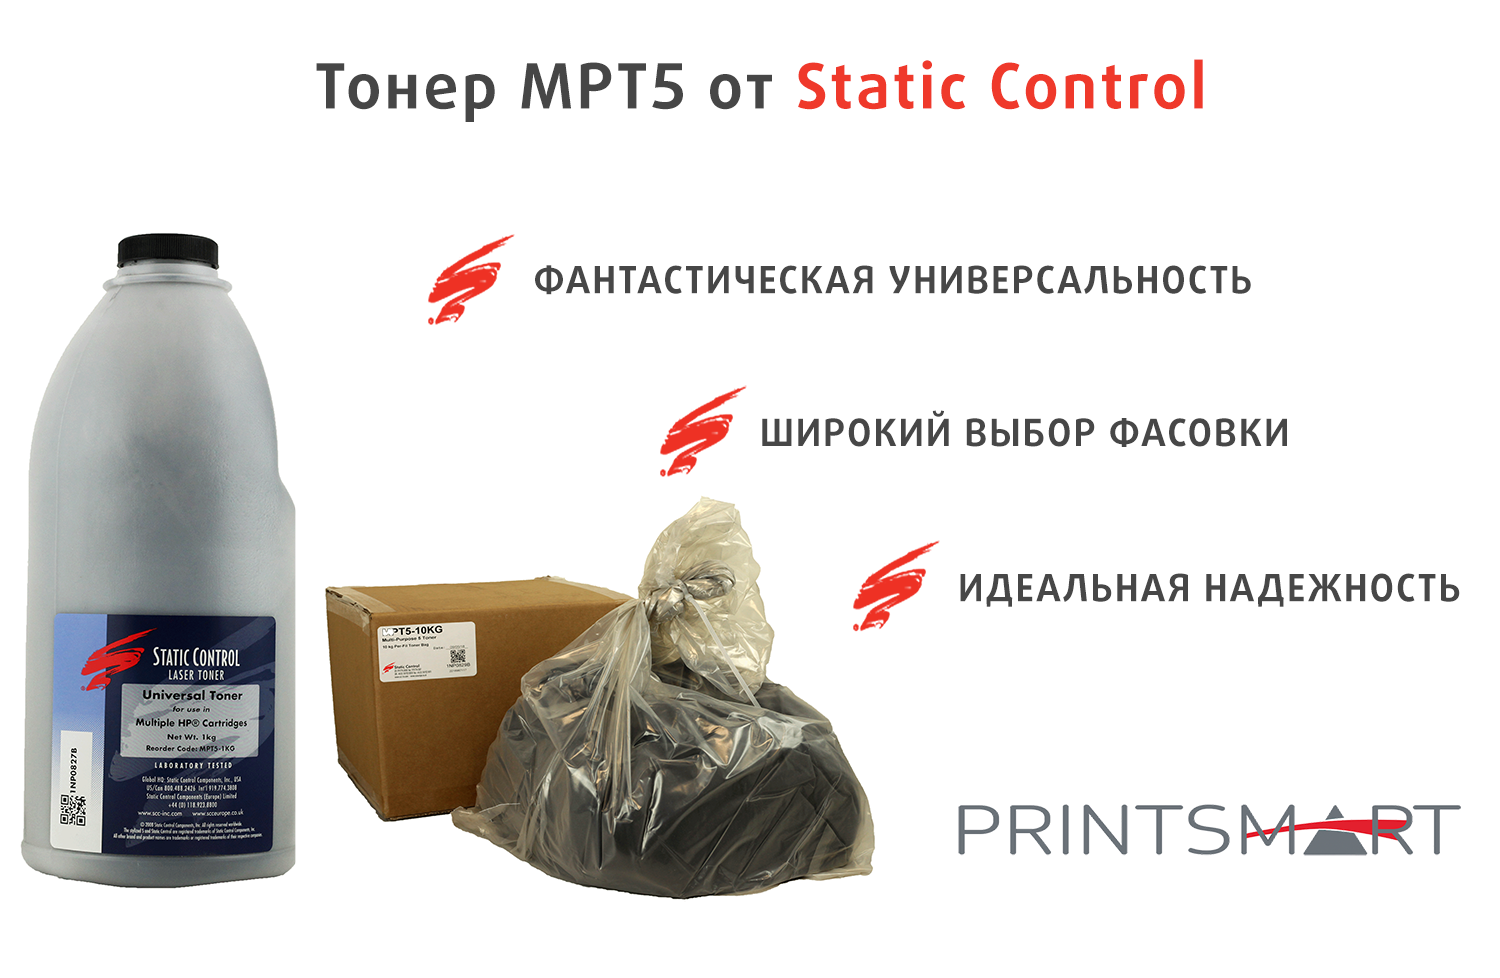 Универсальный тонер MPT5 от компании Static Control